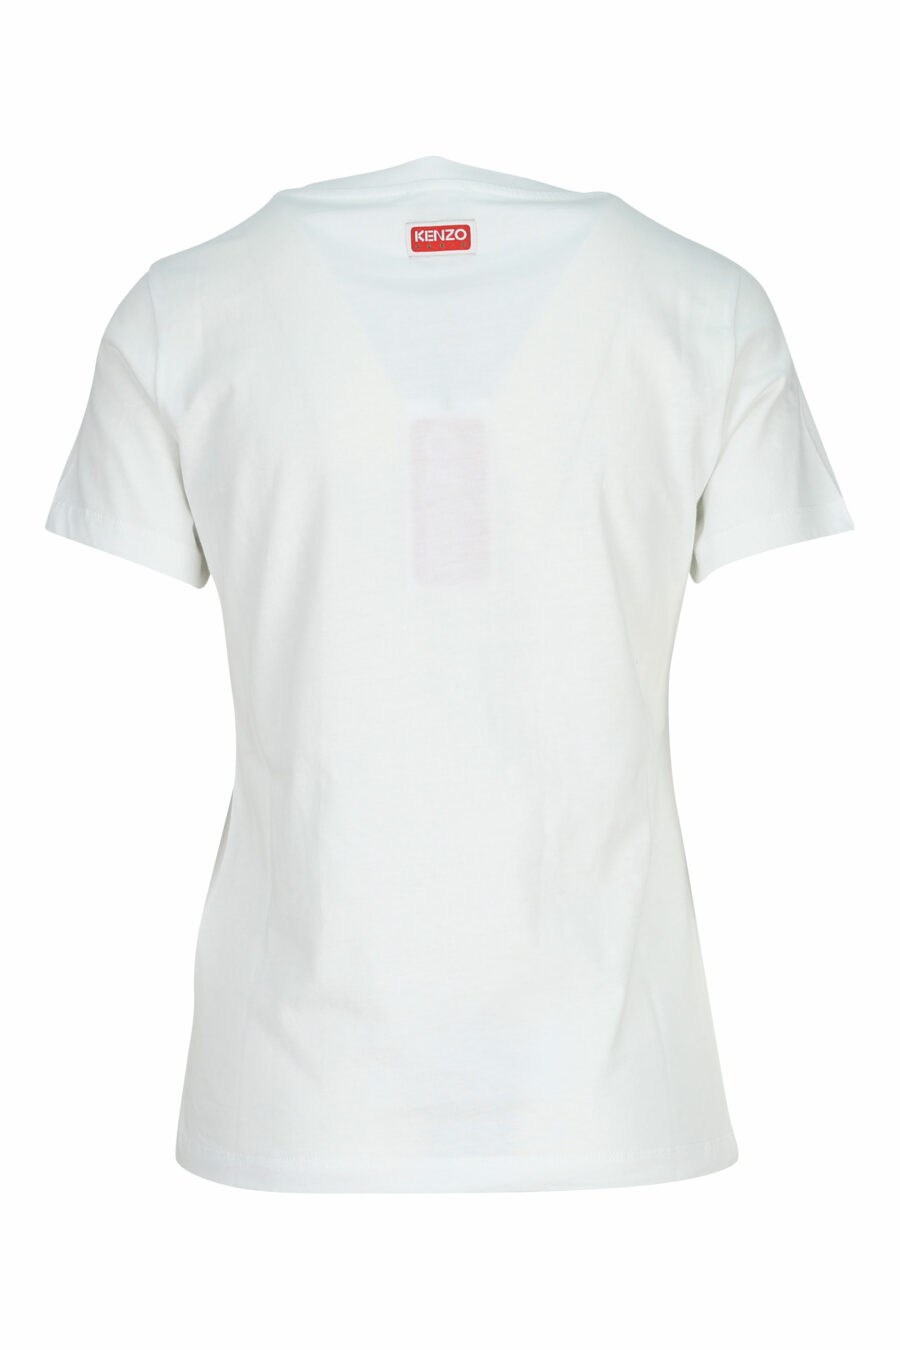 Camiseta blanca con minilogo "kenzo elephant" - 3612230620117 1